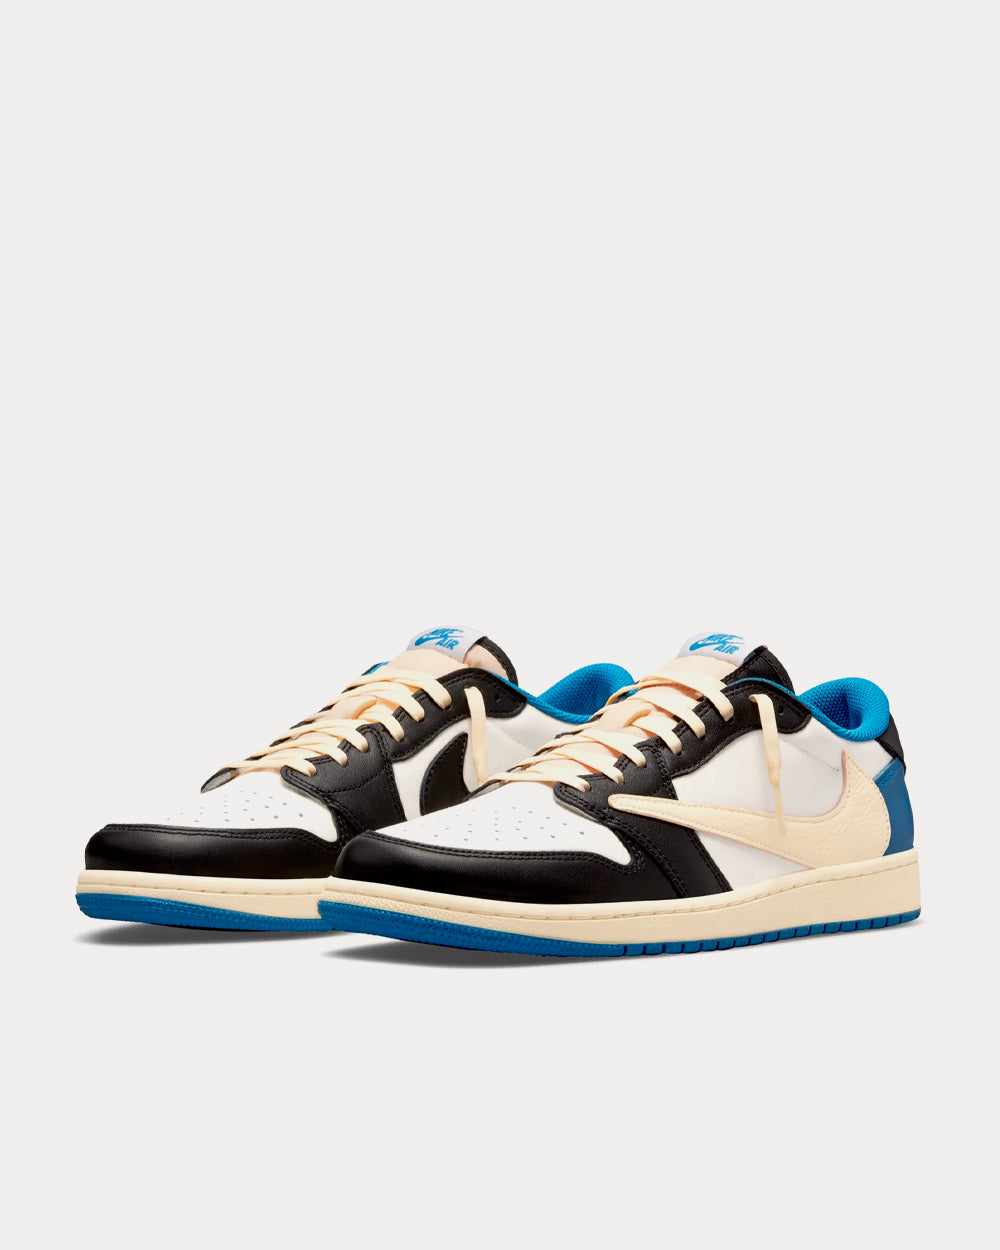 Nike x Travis Scott - x Fragment Design Air Jordan 1 Low OG Sail / Military Blue / Black Low Top Sneakers